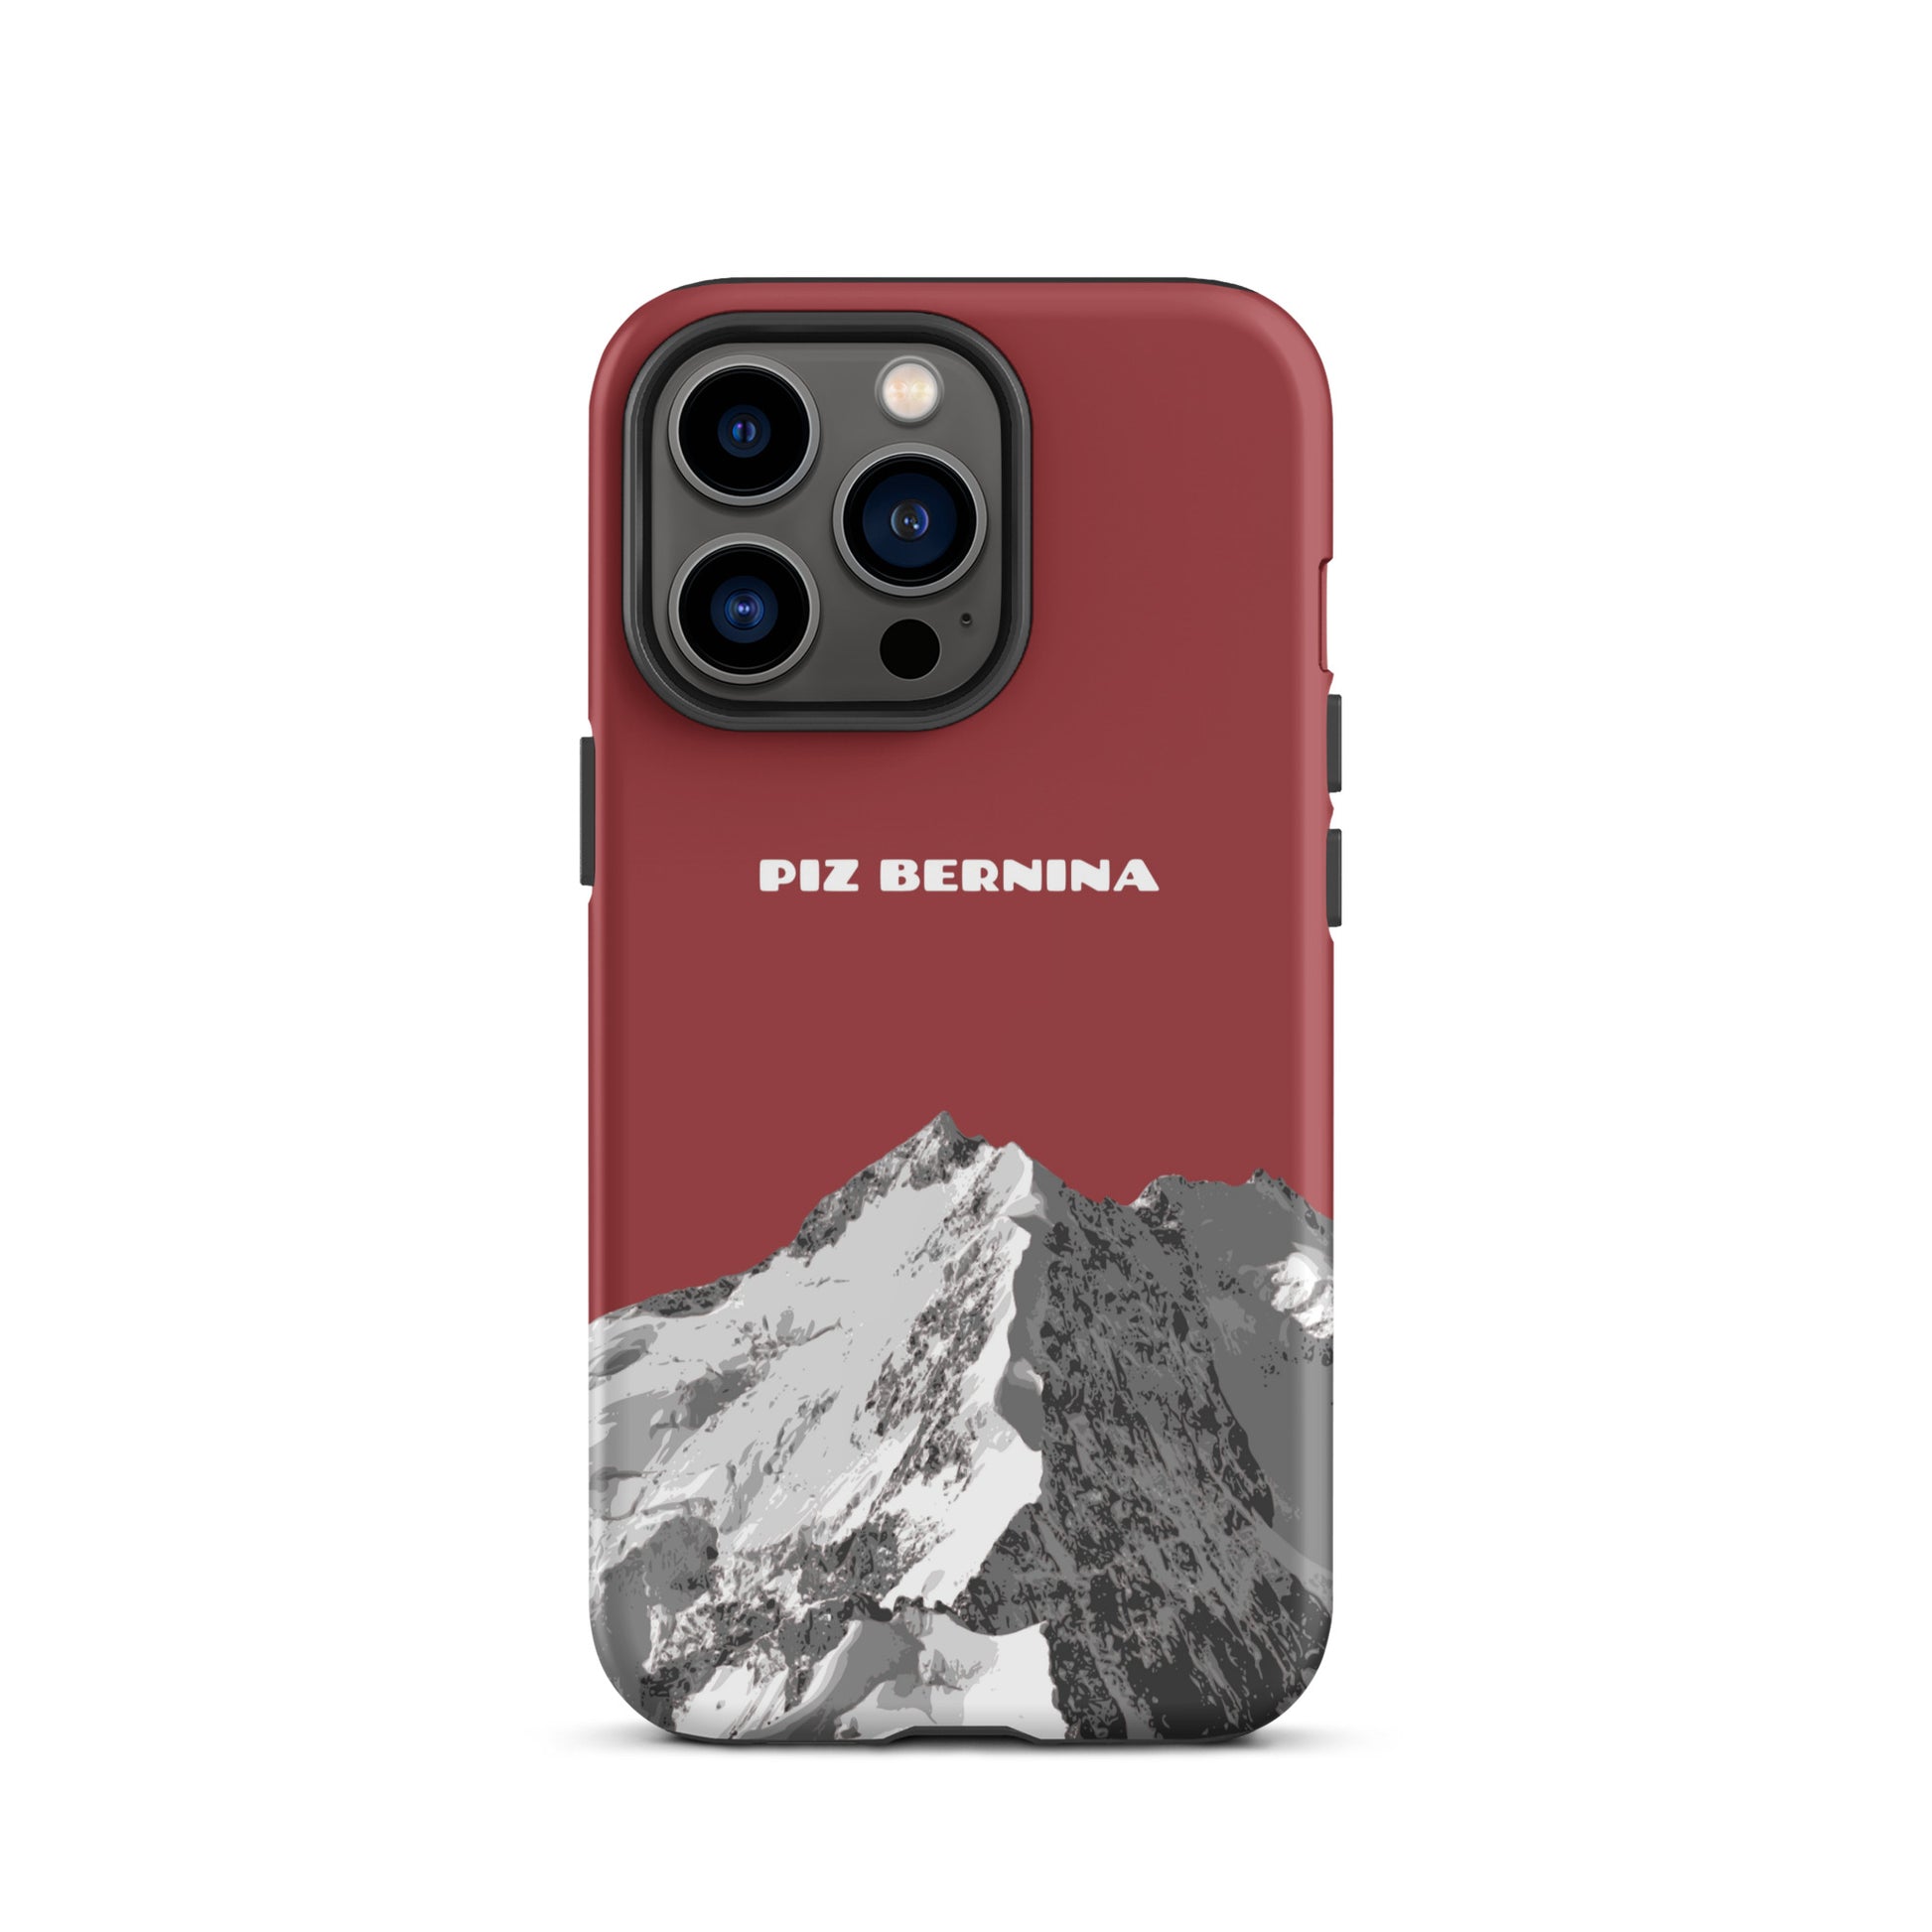 Hülle für das iPhone 13 Pro von Apple in der Farbe Rot, dass den Piz Bernina in Graubünden zeigt.